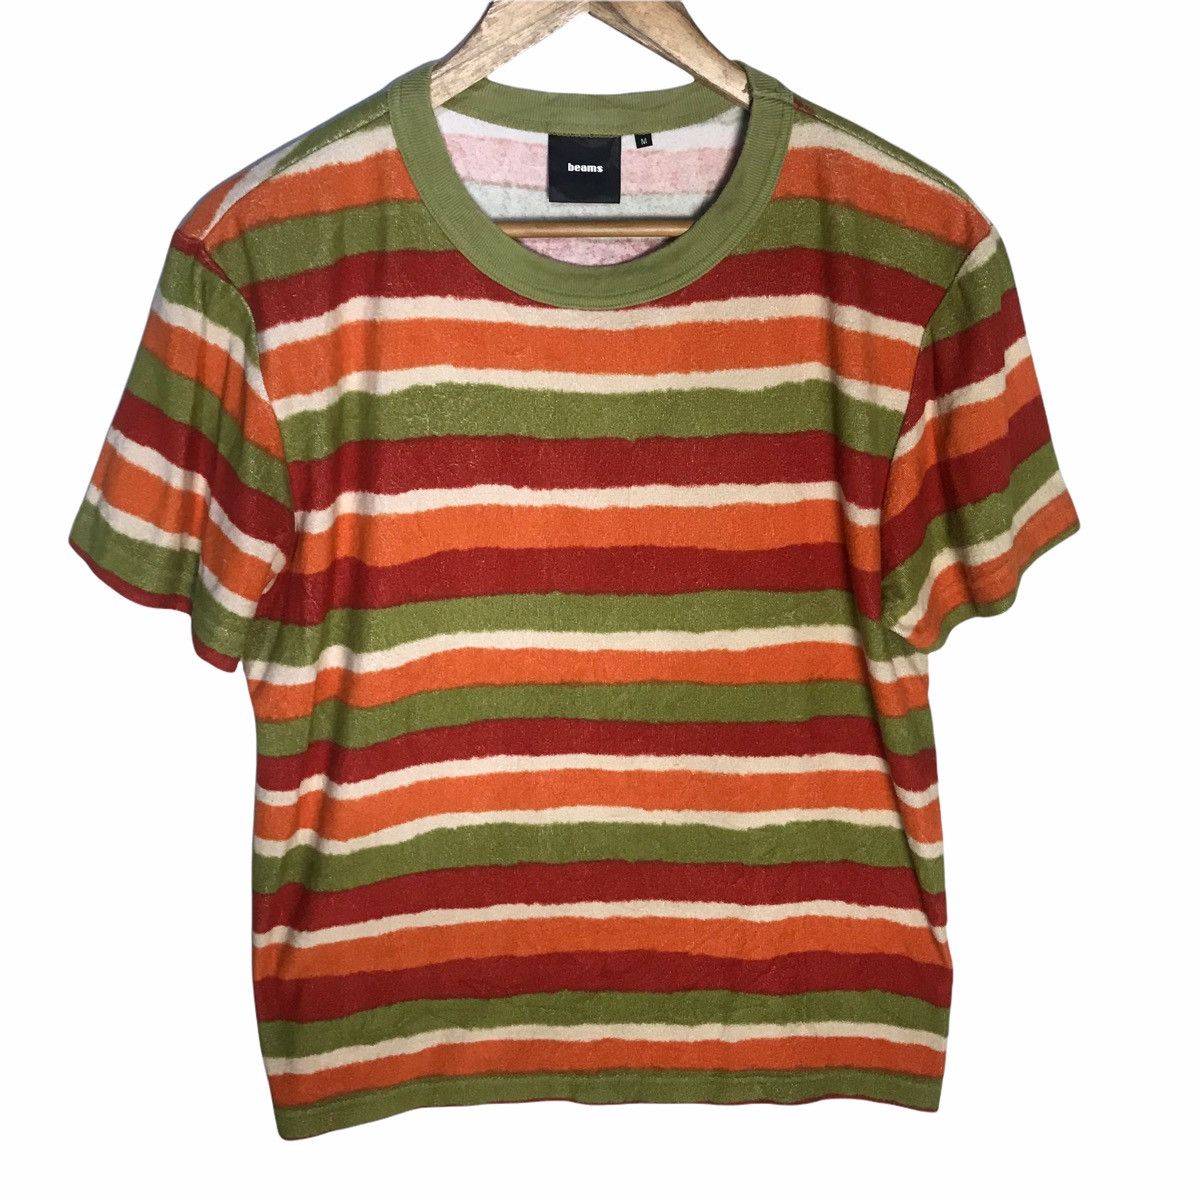 Beams Plus Beams multicolour stripes towelling tshirt | Grailed